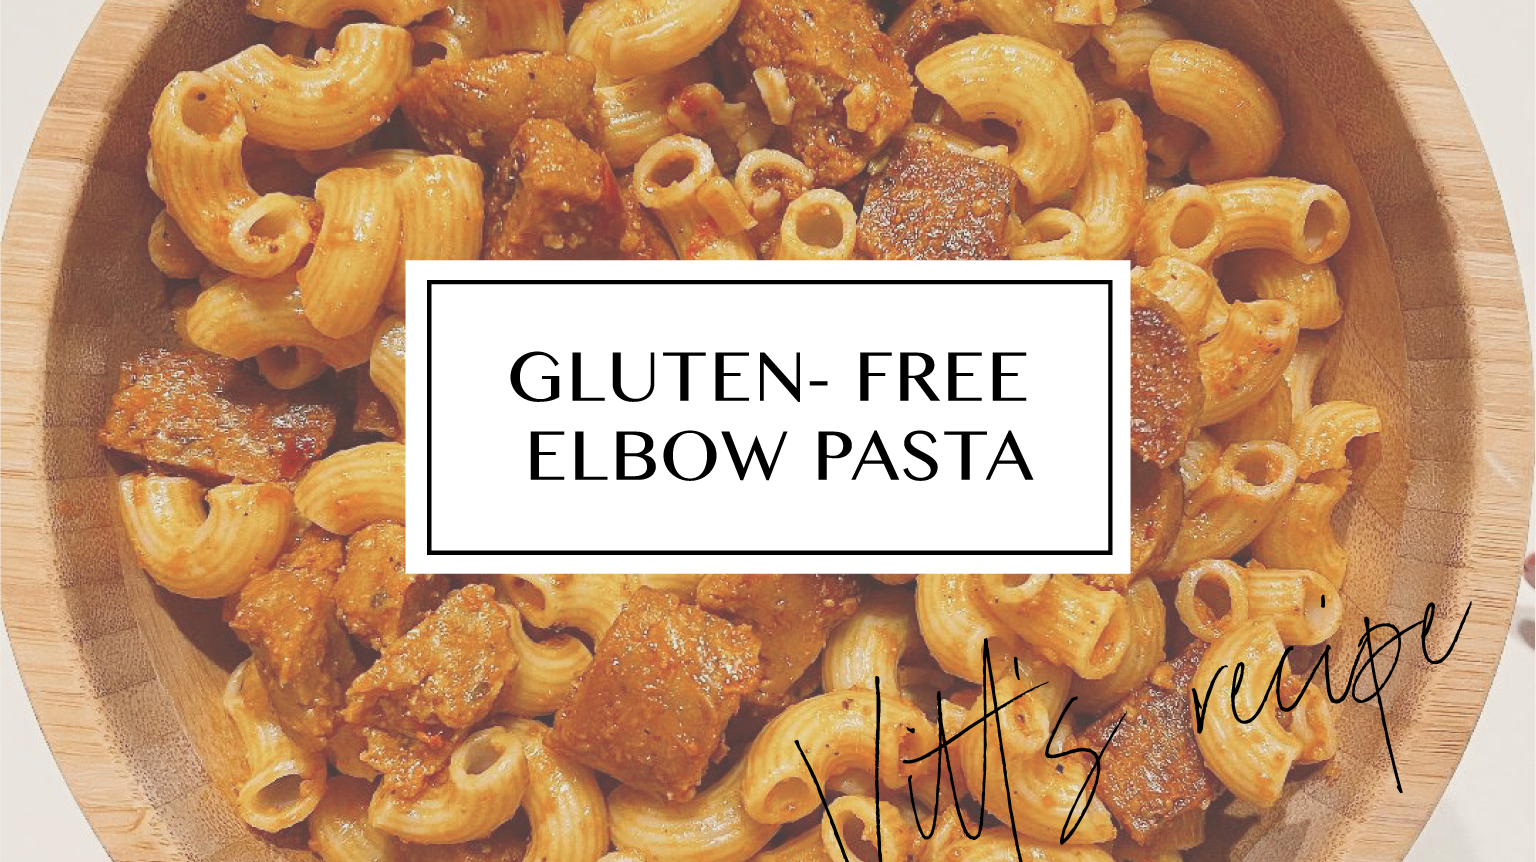 Vitt's Recipe: Gluten-Free Elbow Pasta